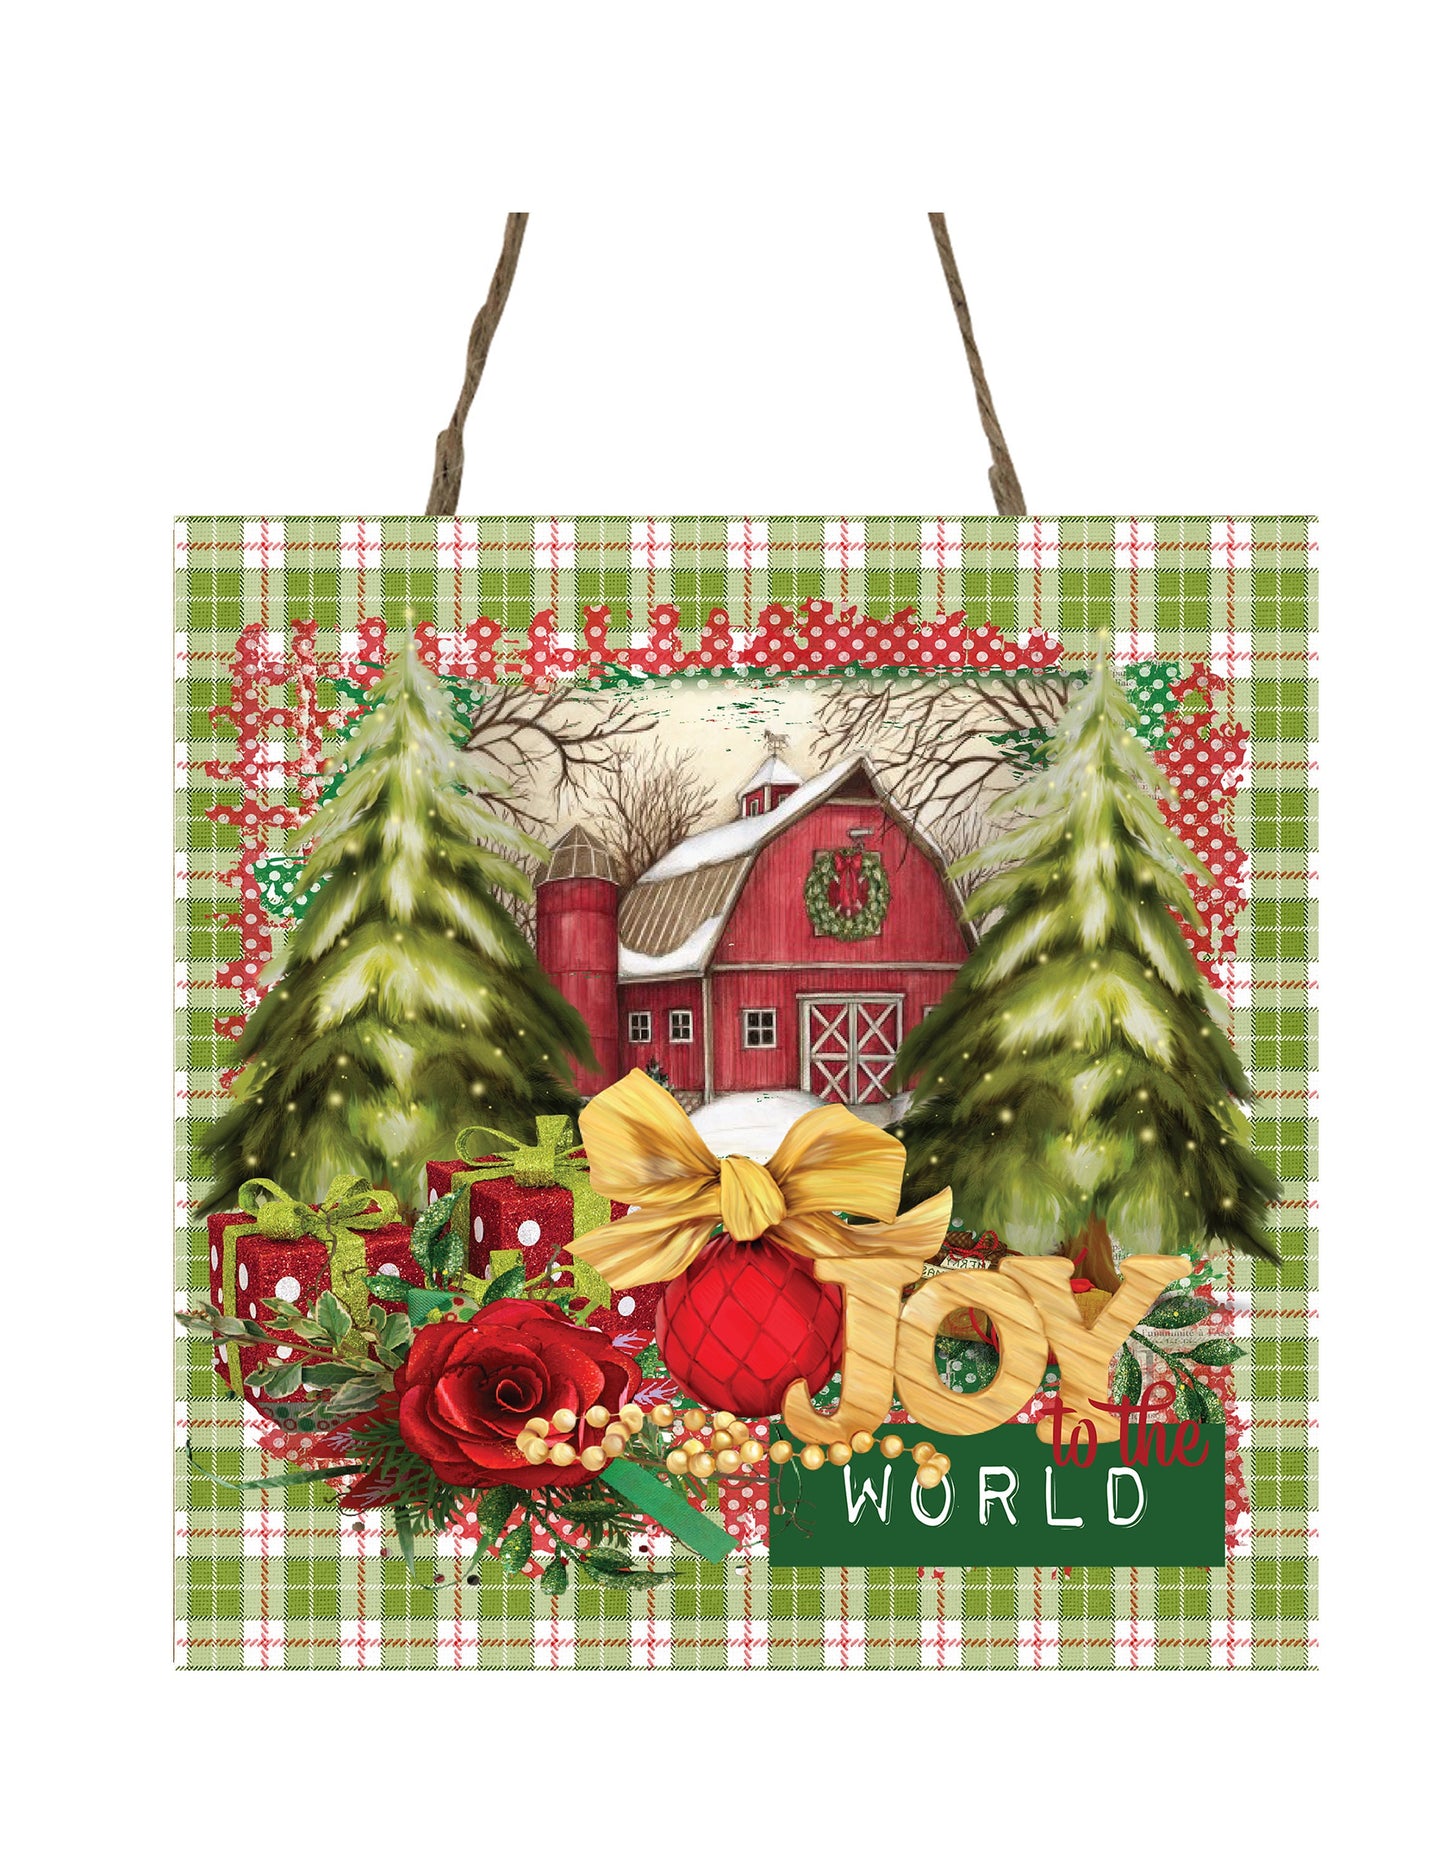 Joy to the World Barn Printed Handmade Wood Christmas Ornament Small Sign